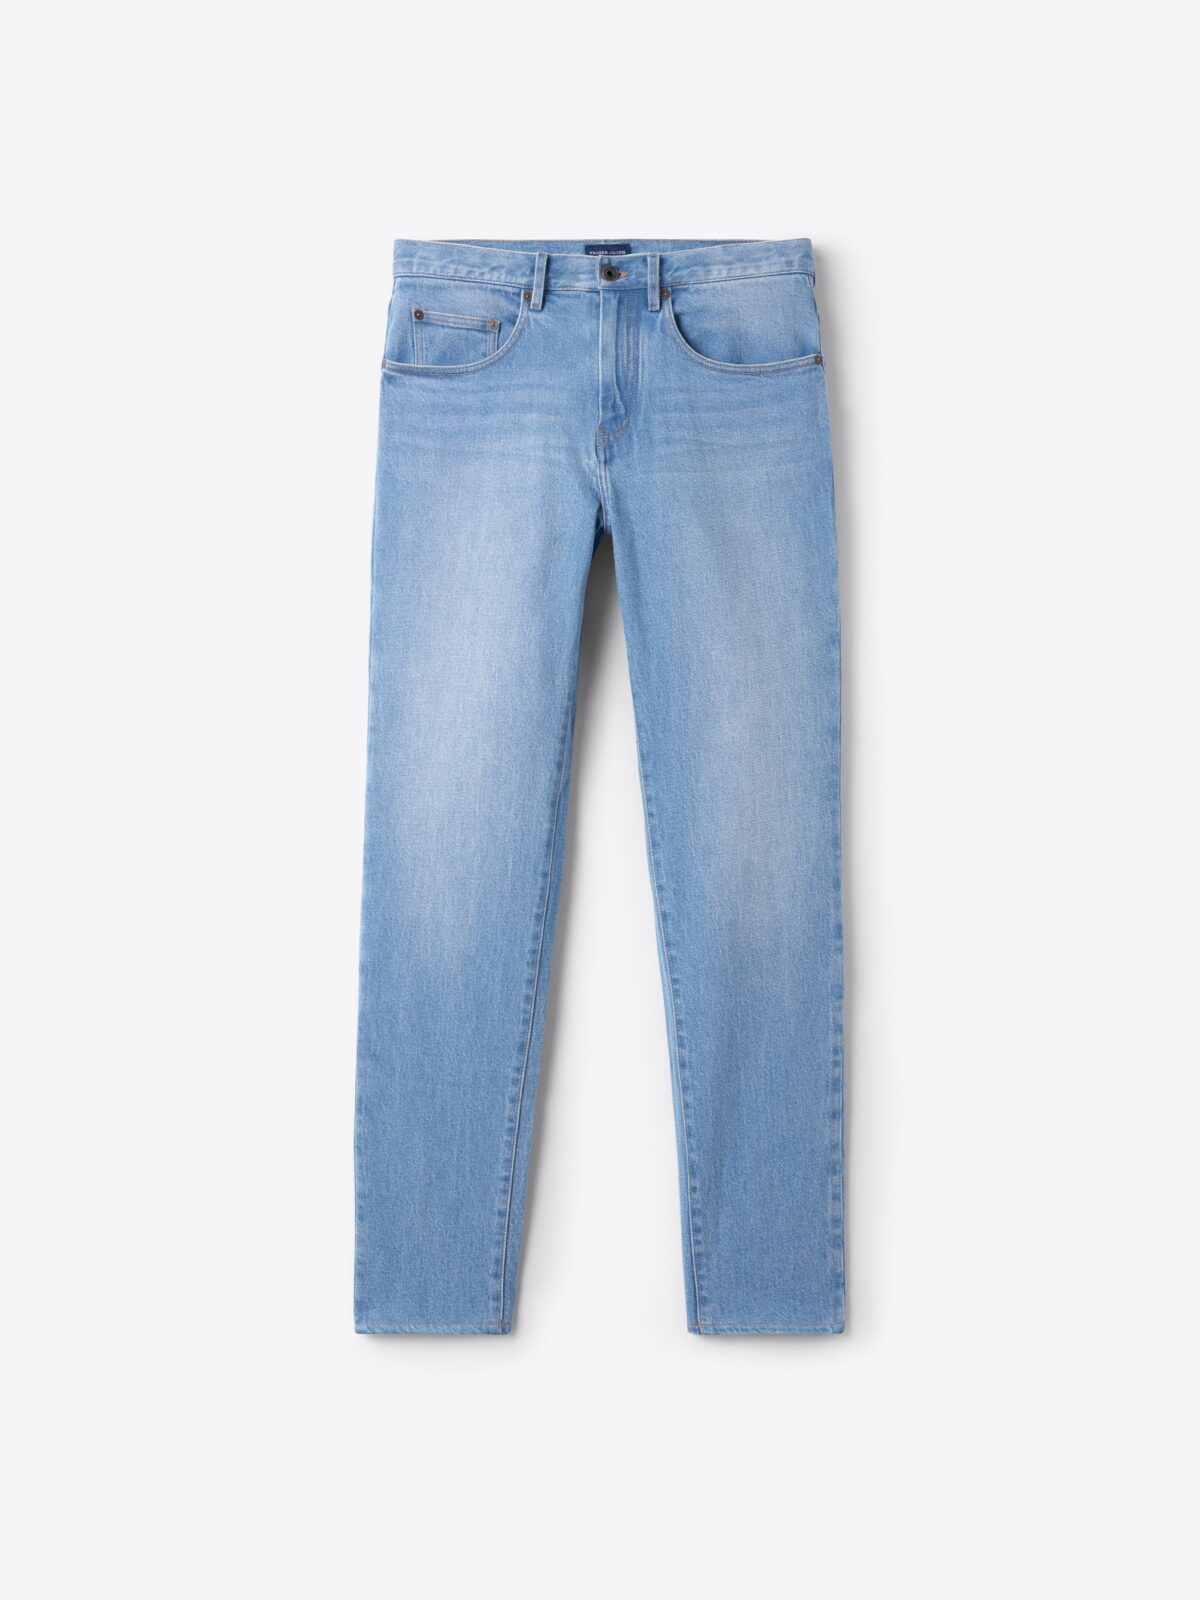 Men’s Denim Jeans · 100% Cotton · Dark Indigo